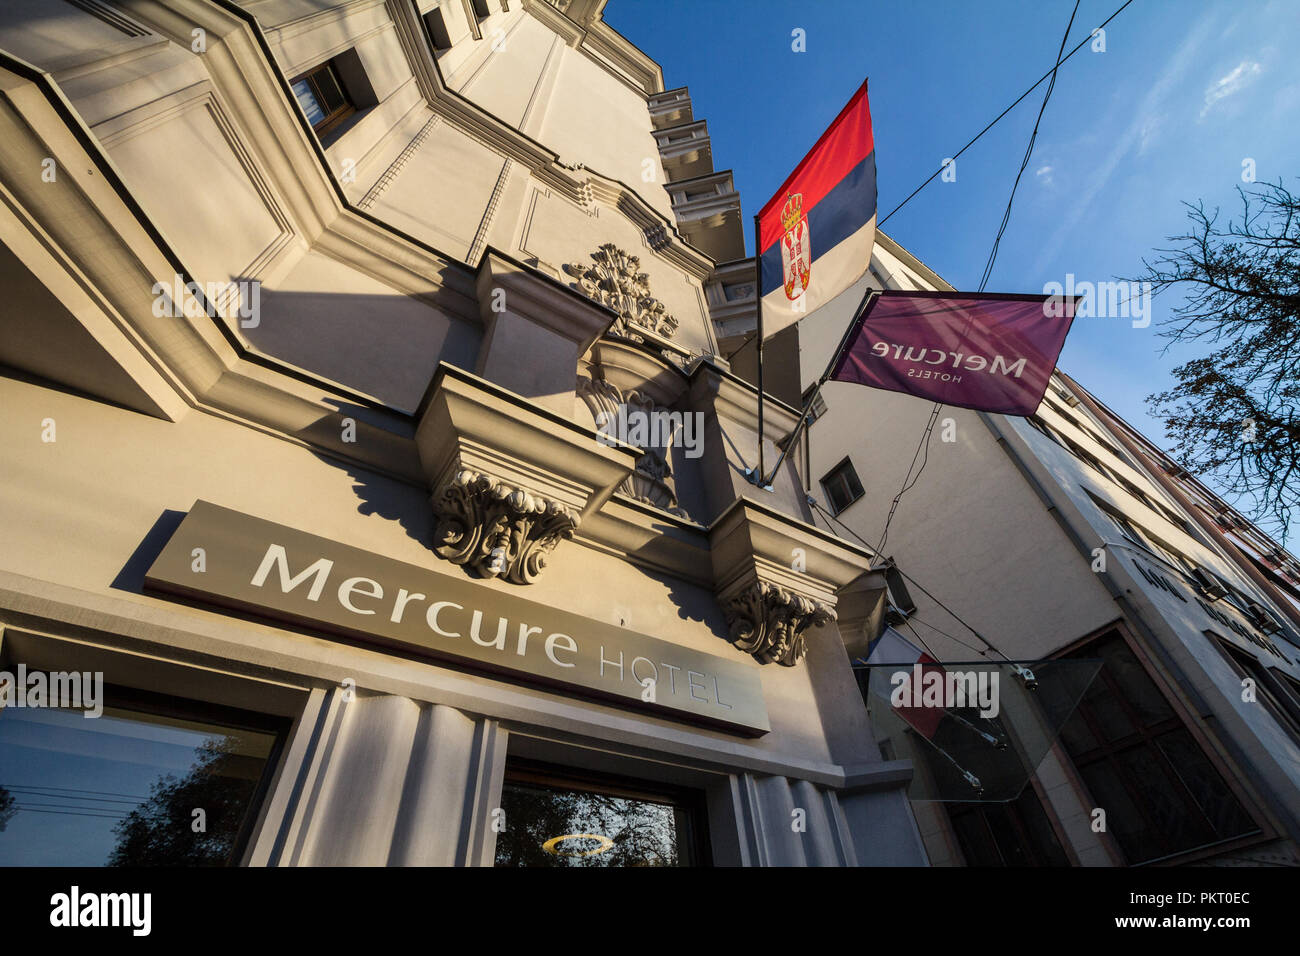 Belgrad, SERBIEN - September 12, 2018: Mercure Hotel Logo auf Ihr Hauptgeschäft für Serbien. Mercure Hotels ist eine Hotelkette der Accorhotel Gruppe Stockfoto